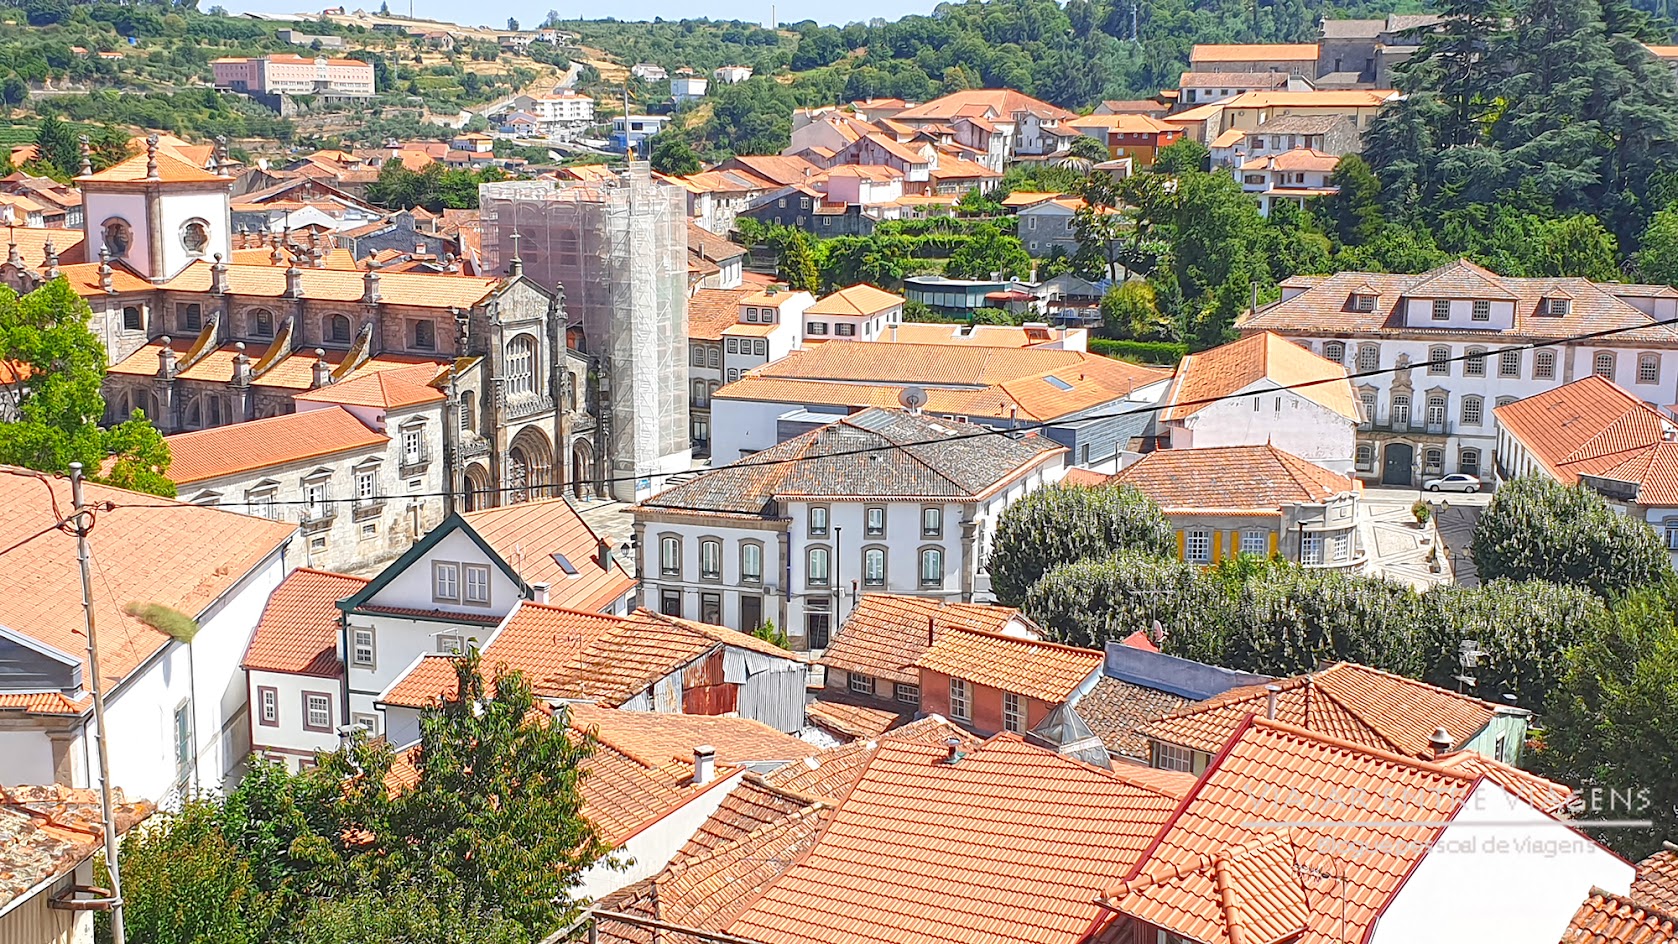 VISITAR LAMEGO, o que ver e fazer na cidade monumental do Douro